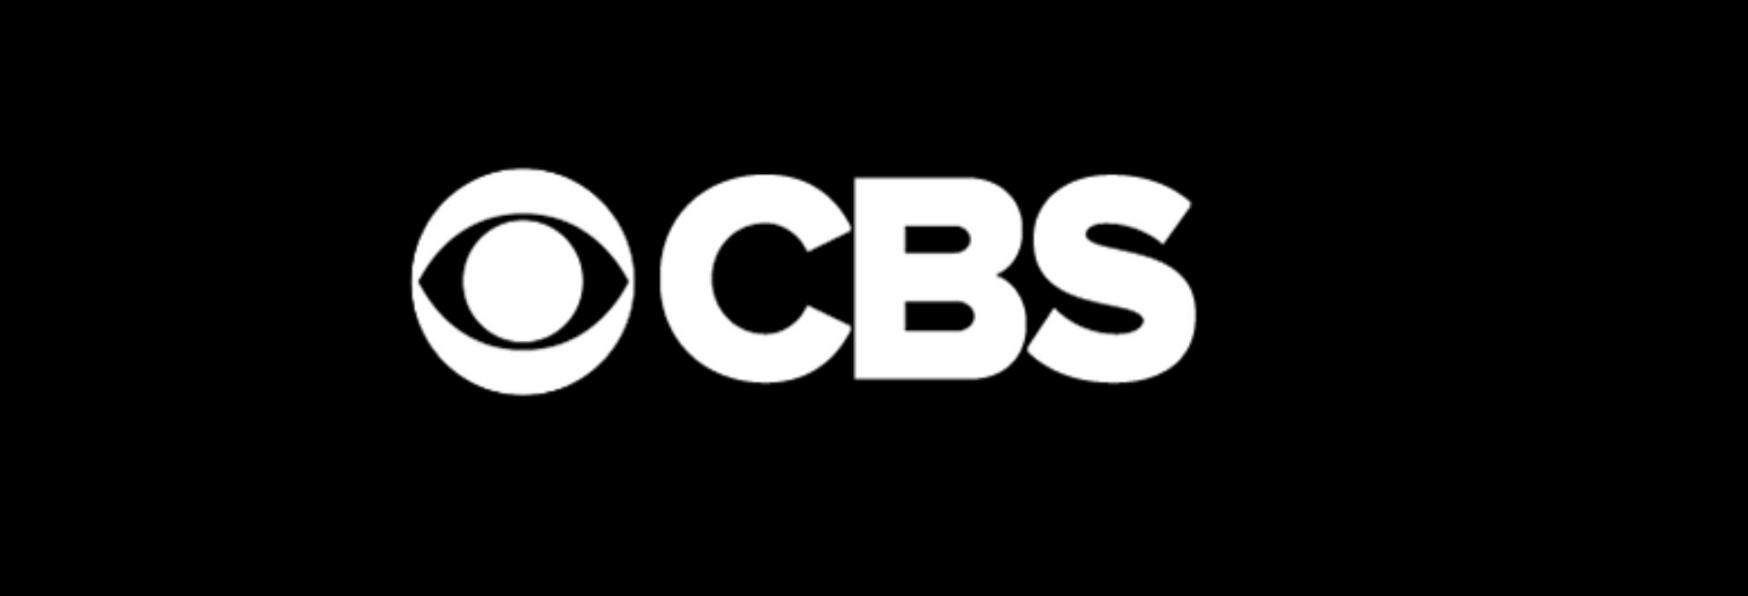 Sober Companion: CBS ordina il Pilot della nuova Serie TV Comedy